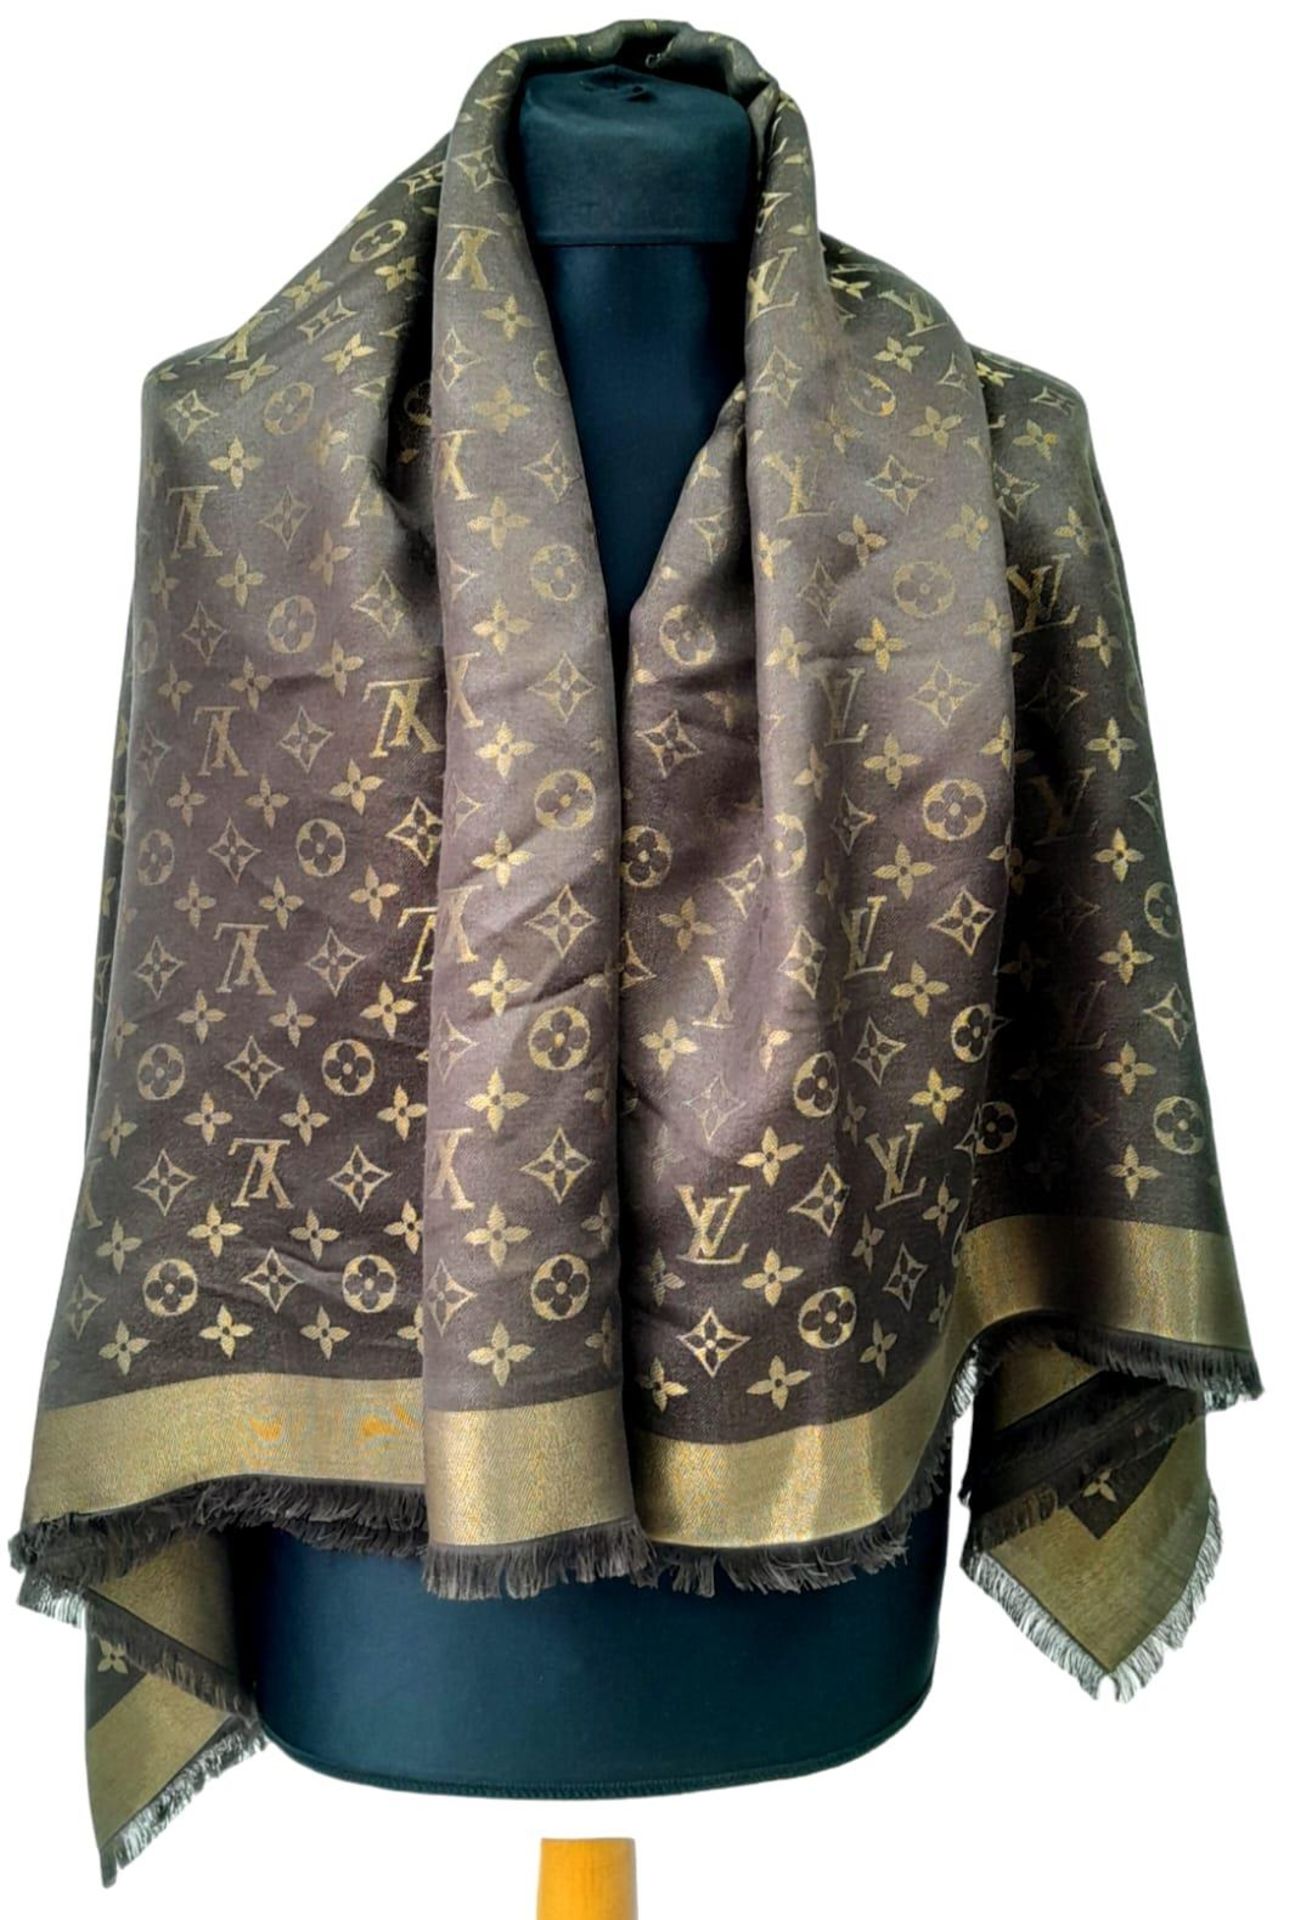 A Louis Vuitton Châle Monogram Shine Silk Scarf. Comes with purchase receipt. Approximately 140cm - Bild 2 aus 6